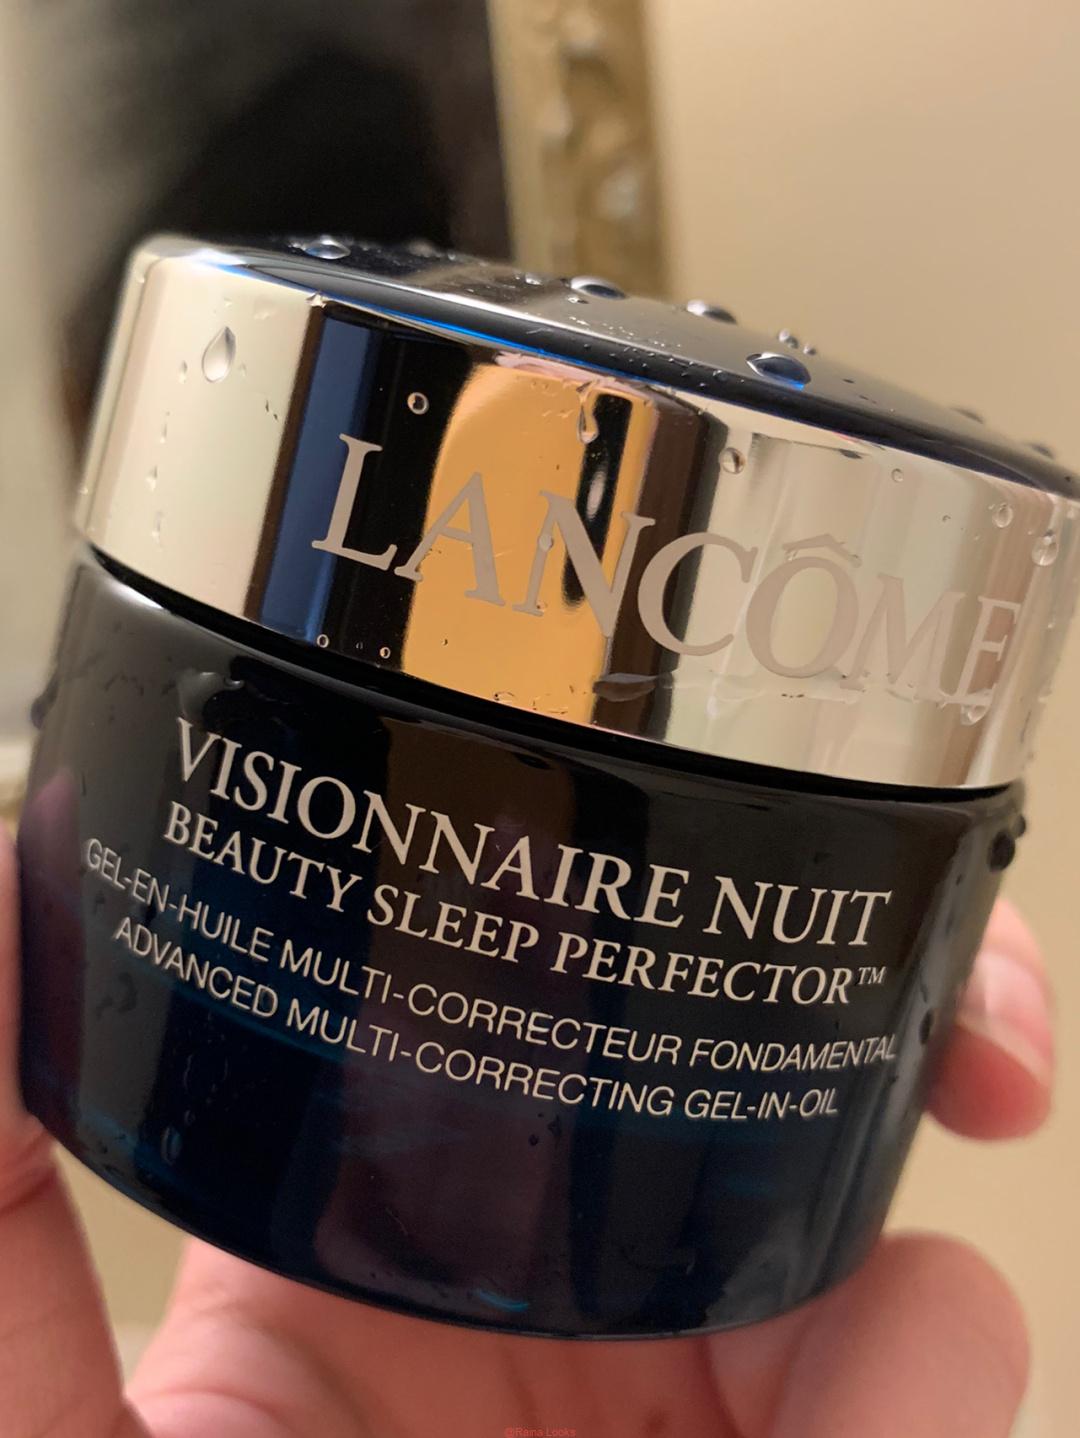 Visionnaire Nuit Beauty Sleep Perfector Face Moisturizer1 - Lancome Visionnaire Nuit Beauty Sleep Perfector Face Moisturizer Review